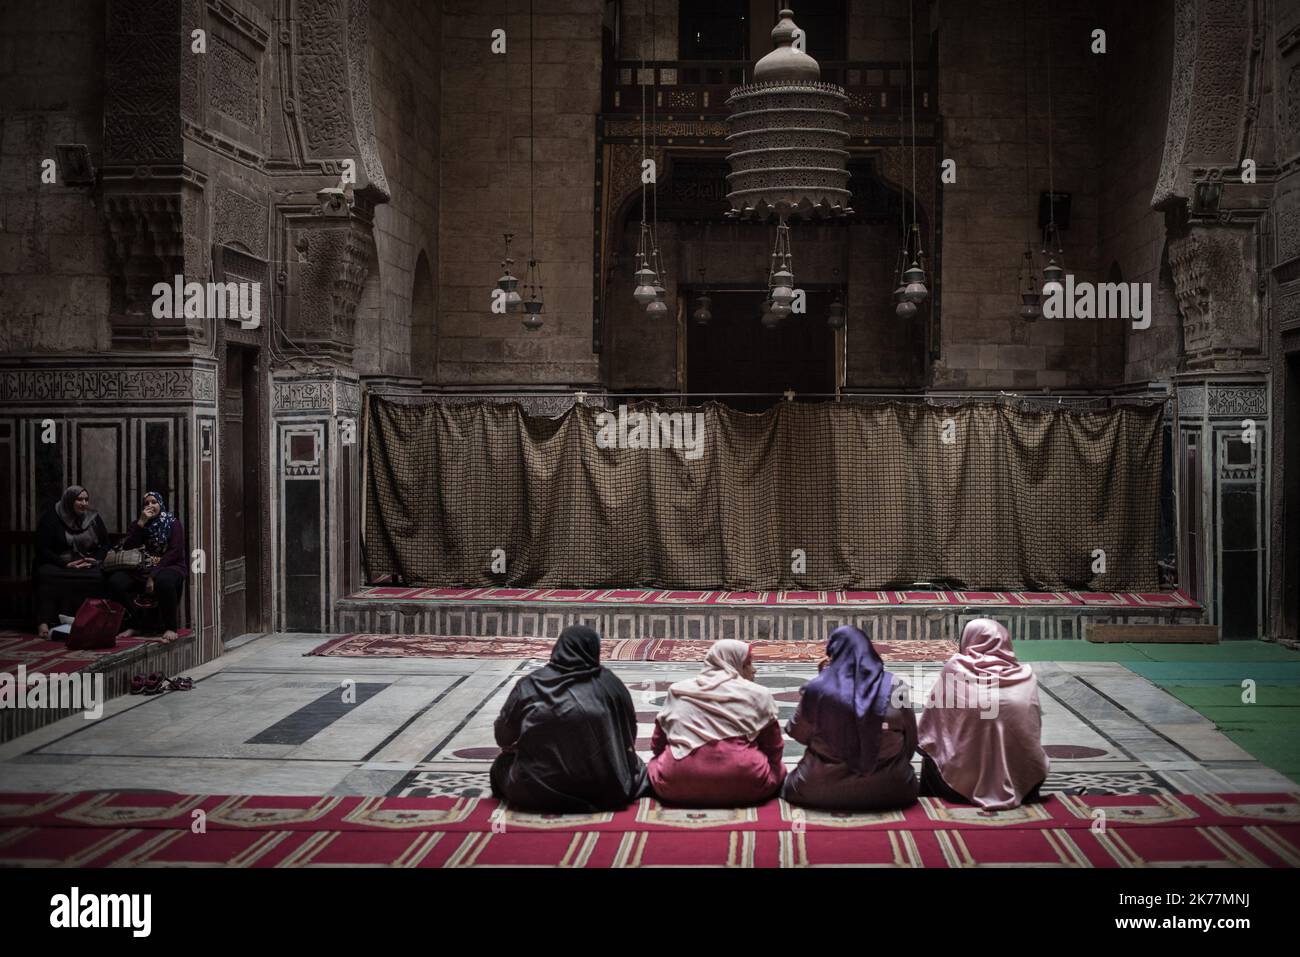 ©Chloe Sharrock / Le Pictorium/MAXPPP - Chloe Sharrock / Le Pictorium - 05/04/2019  -  Egypte / Le Caire  -  Des femmes dans une mosquee du Caire Islamique.  / 05/04/2019  -  Egypt / Cairo  -  Women in a mosque in the Muslim Cairo. Stock Photo